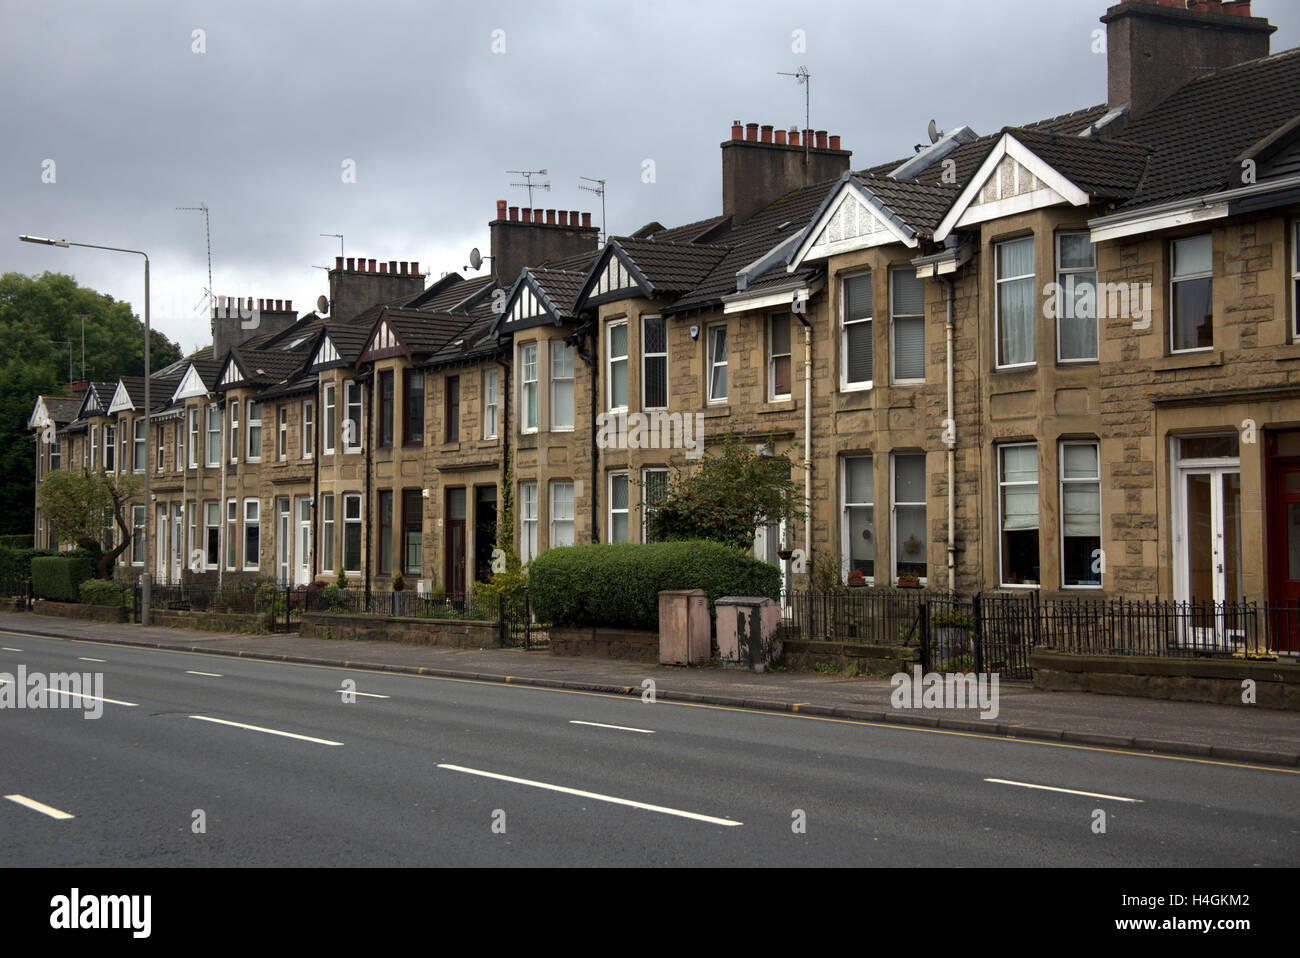 Linie der viktorianischen blond Sandstein Reihenhaus Häuser ohne Autos geparkt vor ihnen mit einer leeren Straße Stockfoto